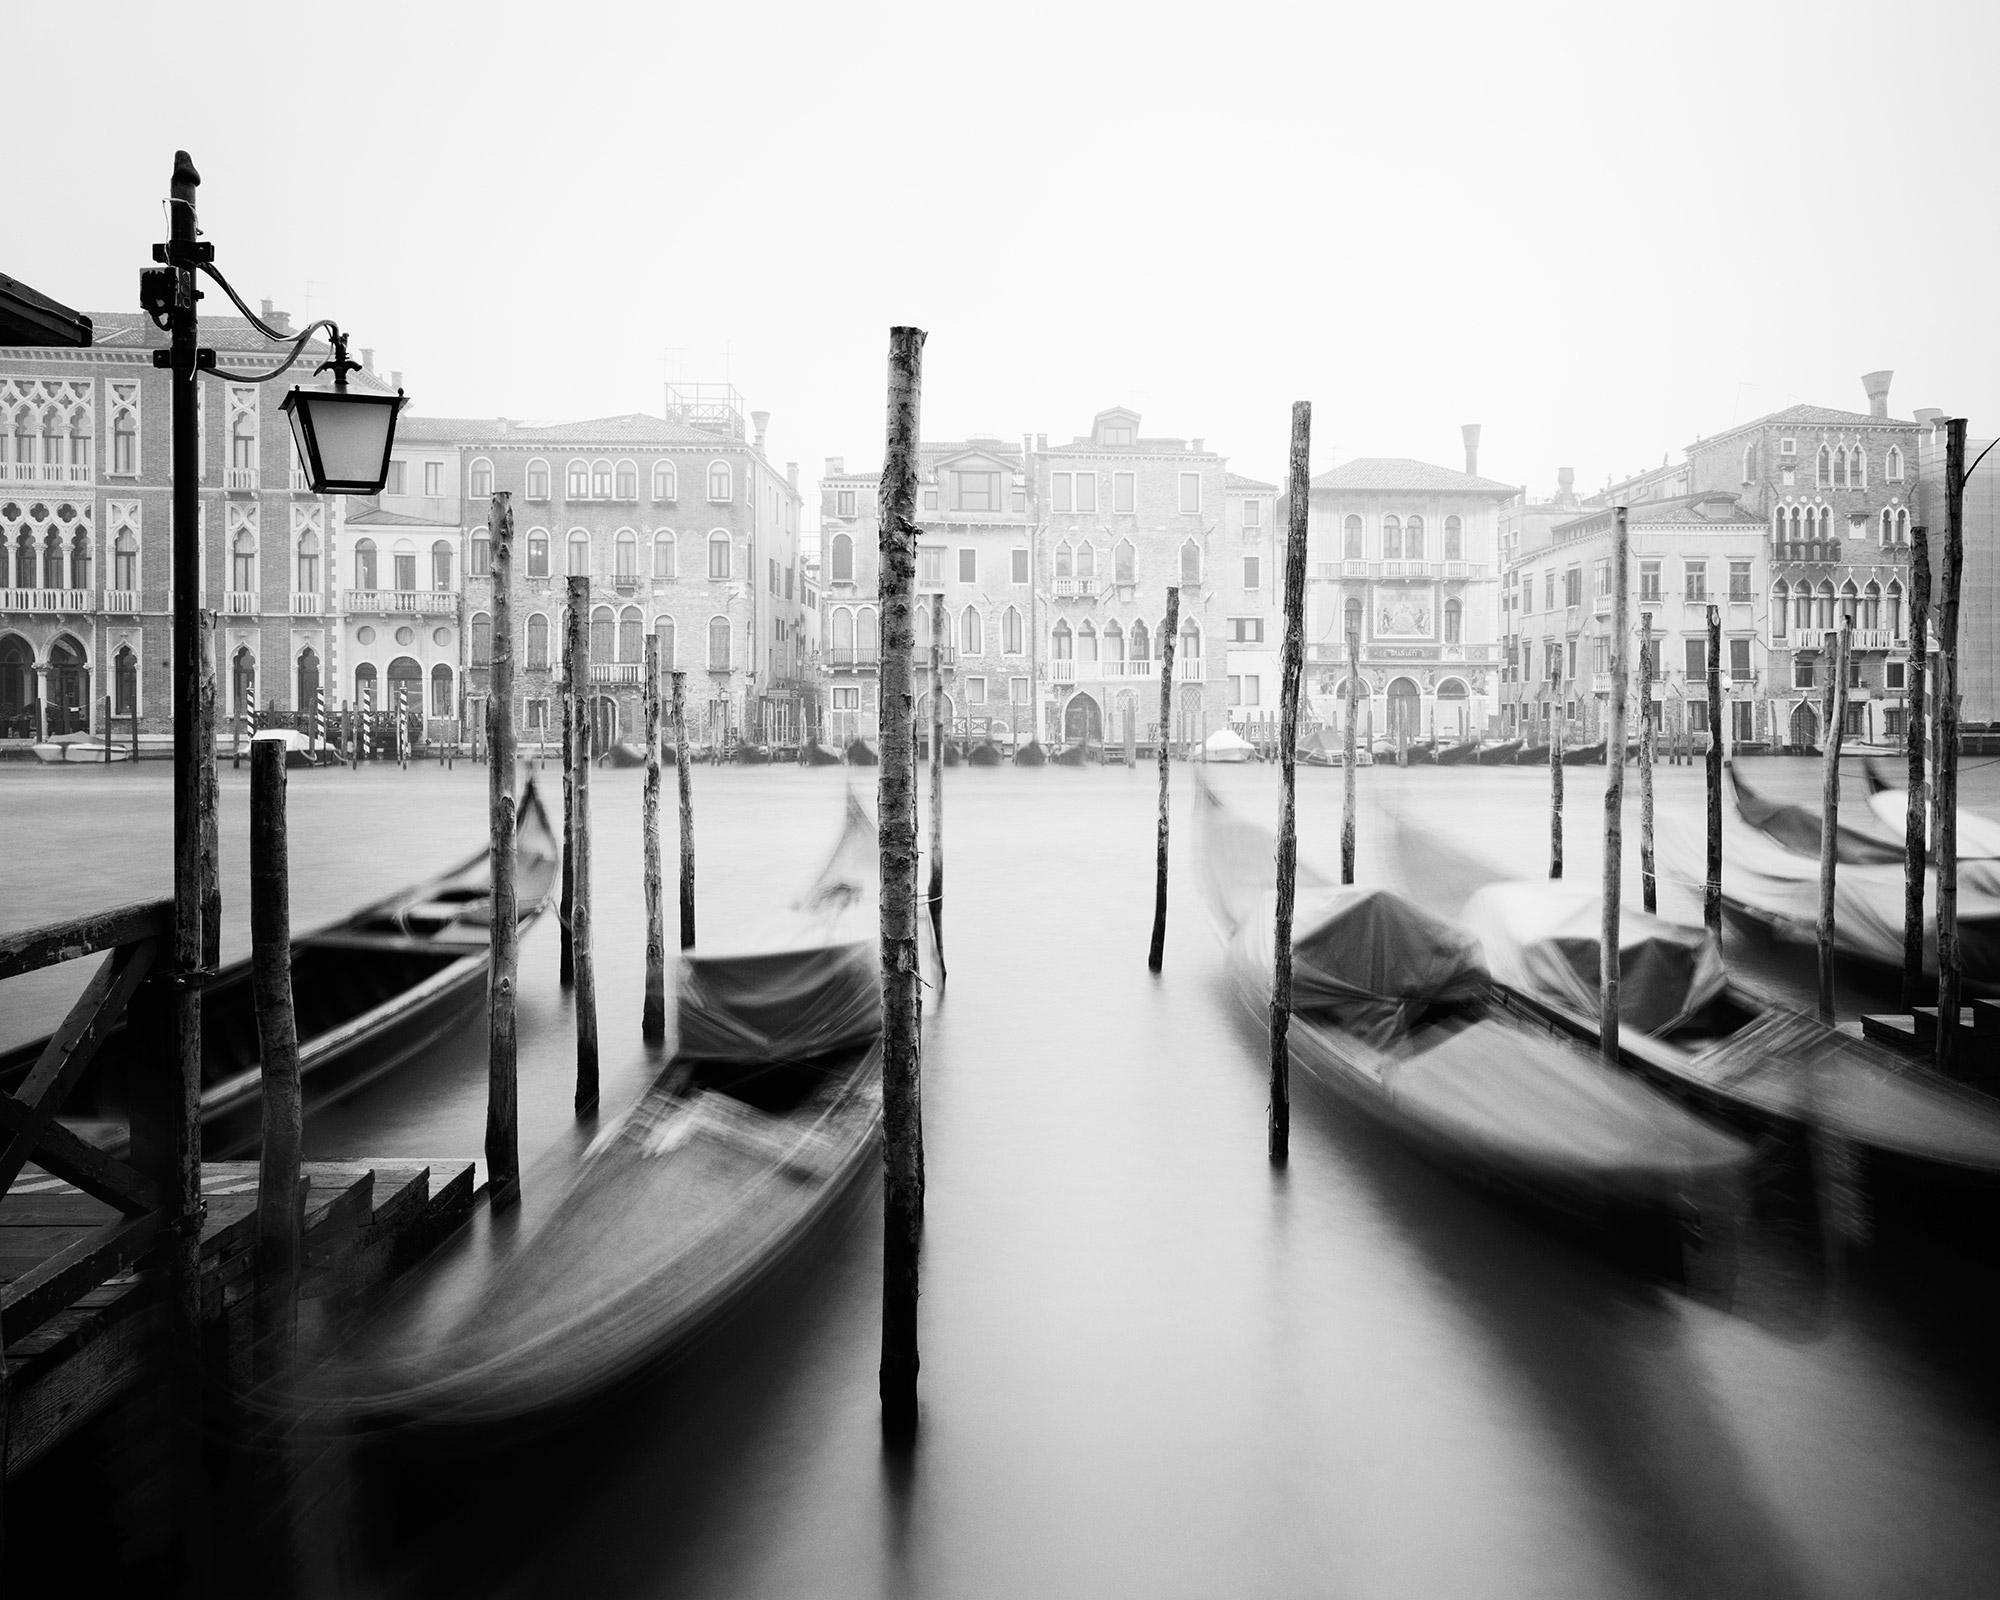 Gondole, Canal Grande, Venise, photographie de paysage urbain en noir et blanc